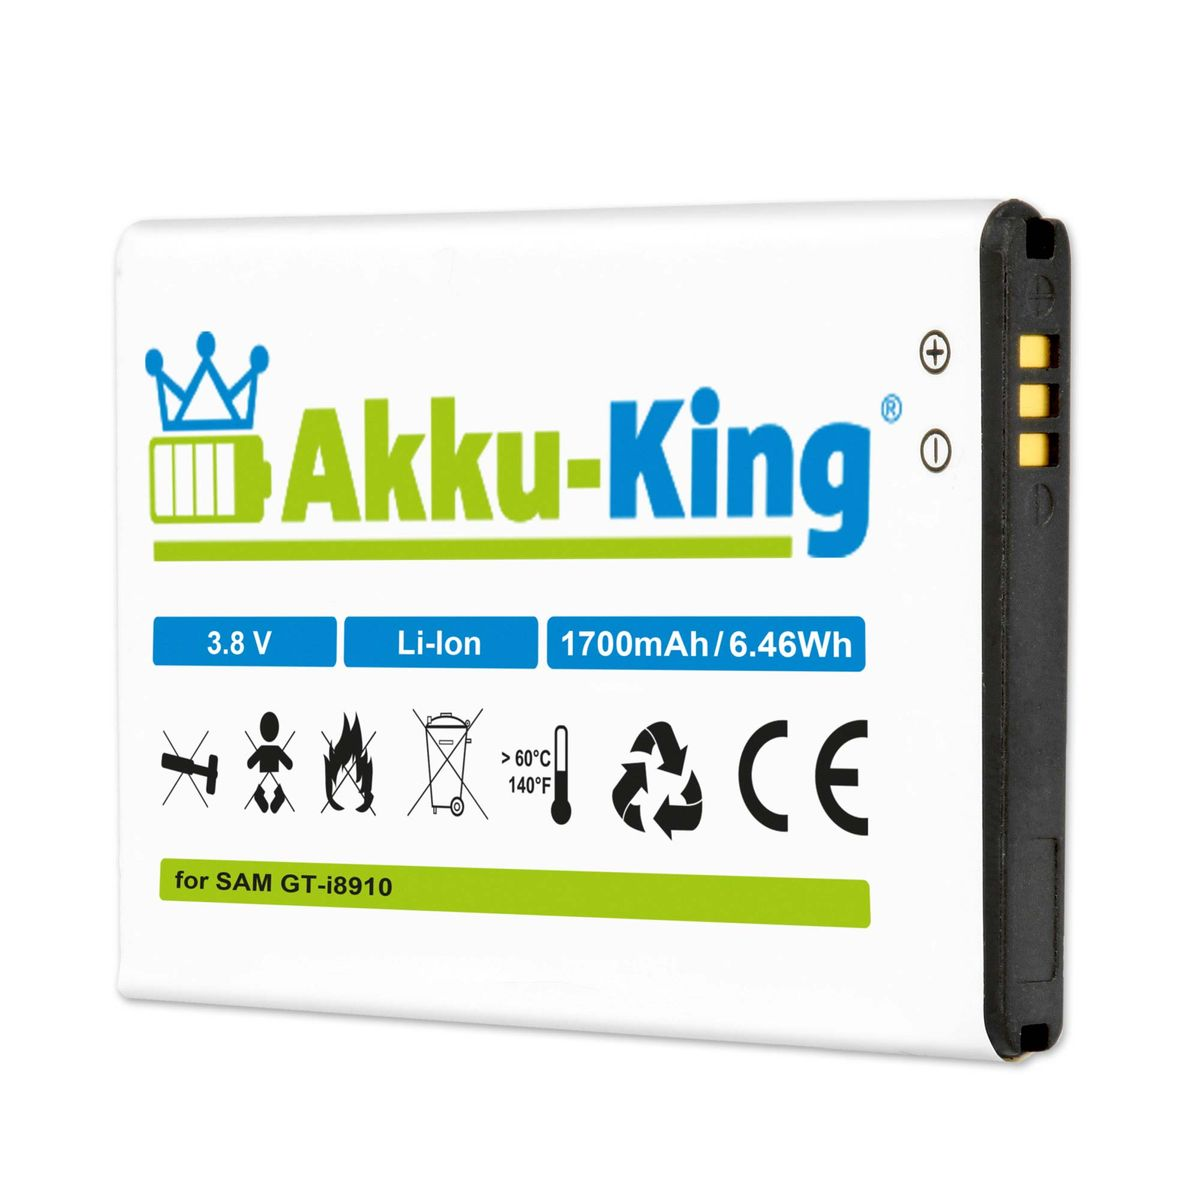 AKKU-KING Akku kompatibel mit Samsung 3.8 1700mAh Volt, EB504465VUC Li-Ion Handy-Akku